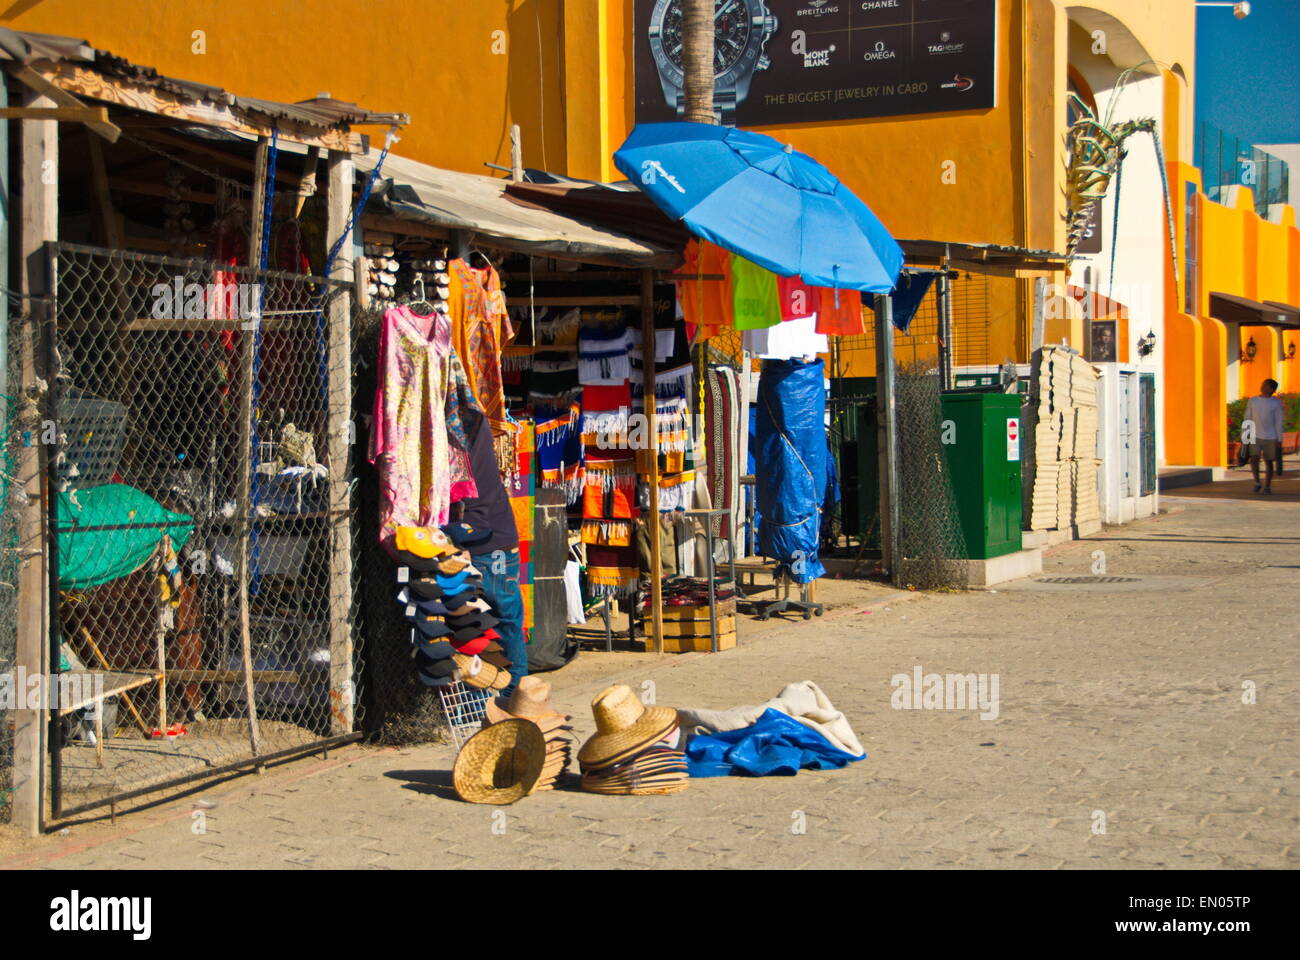 Vendor in Cabo San Lucas, Mexico Stock Photo